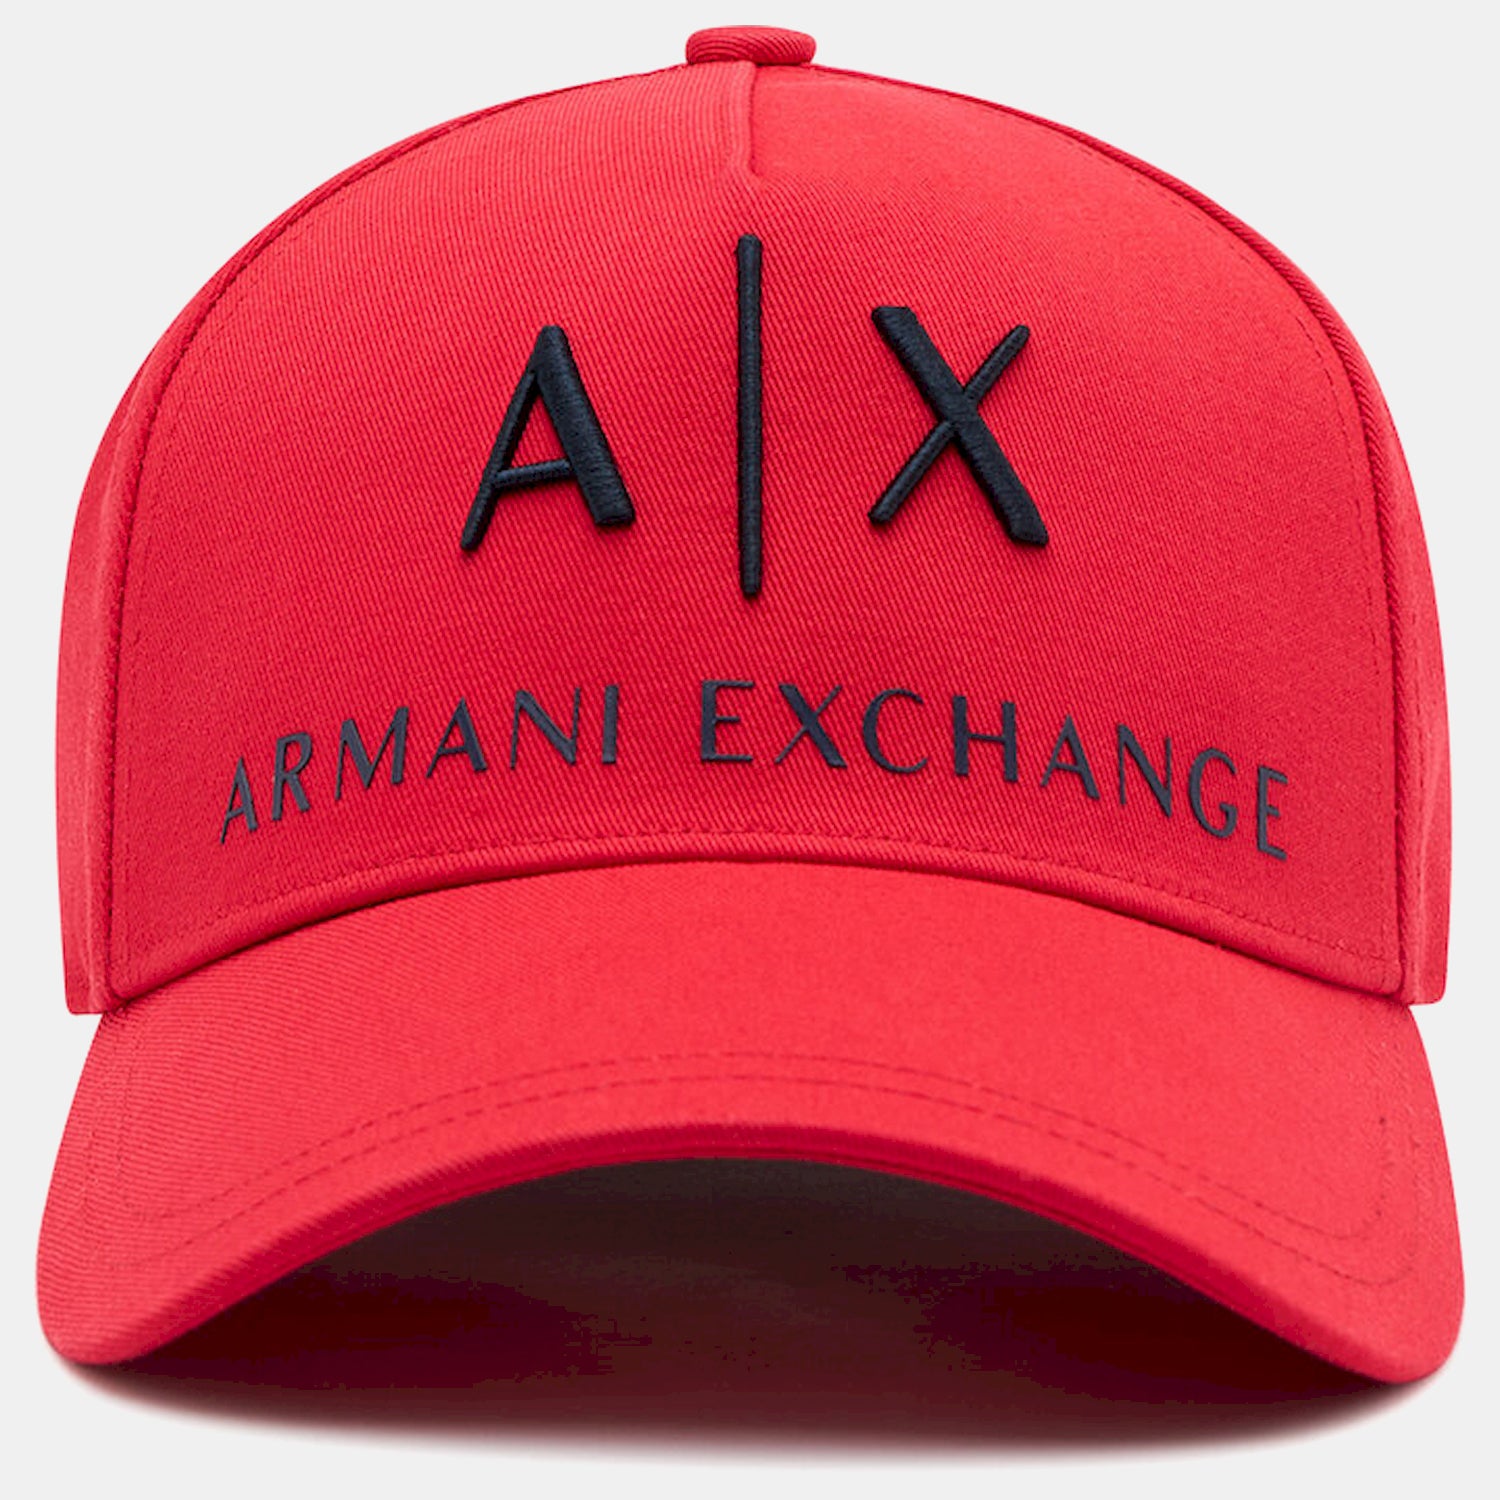 armani-cap-hat-954039-cc513-red-vermelho_shot2